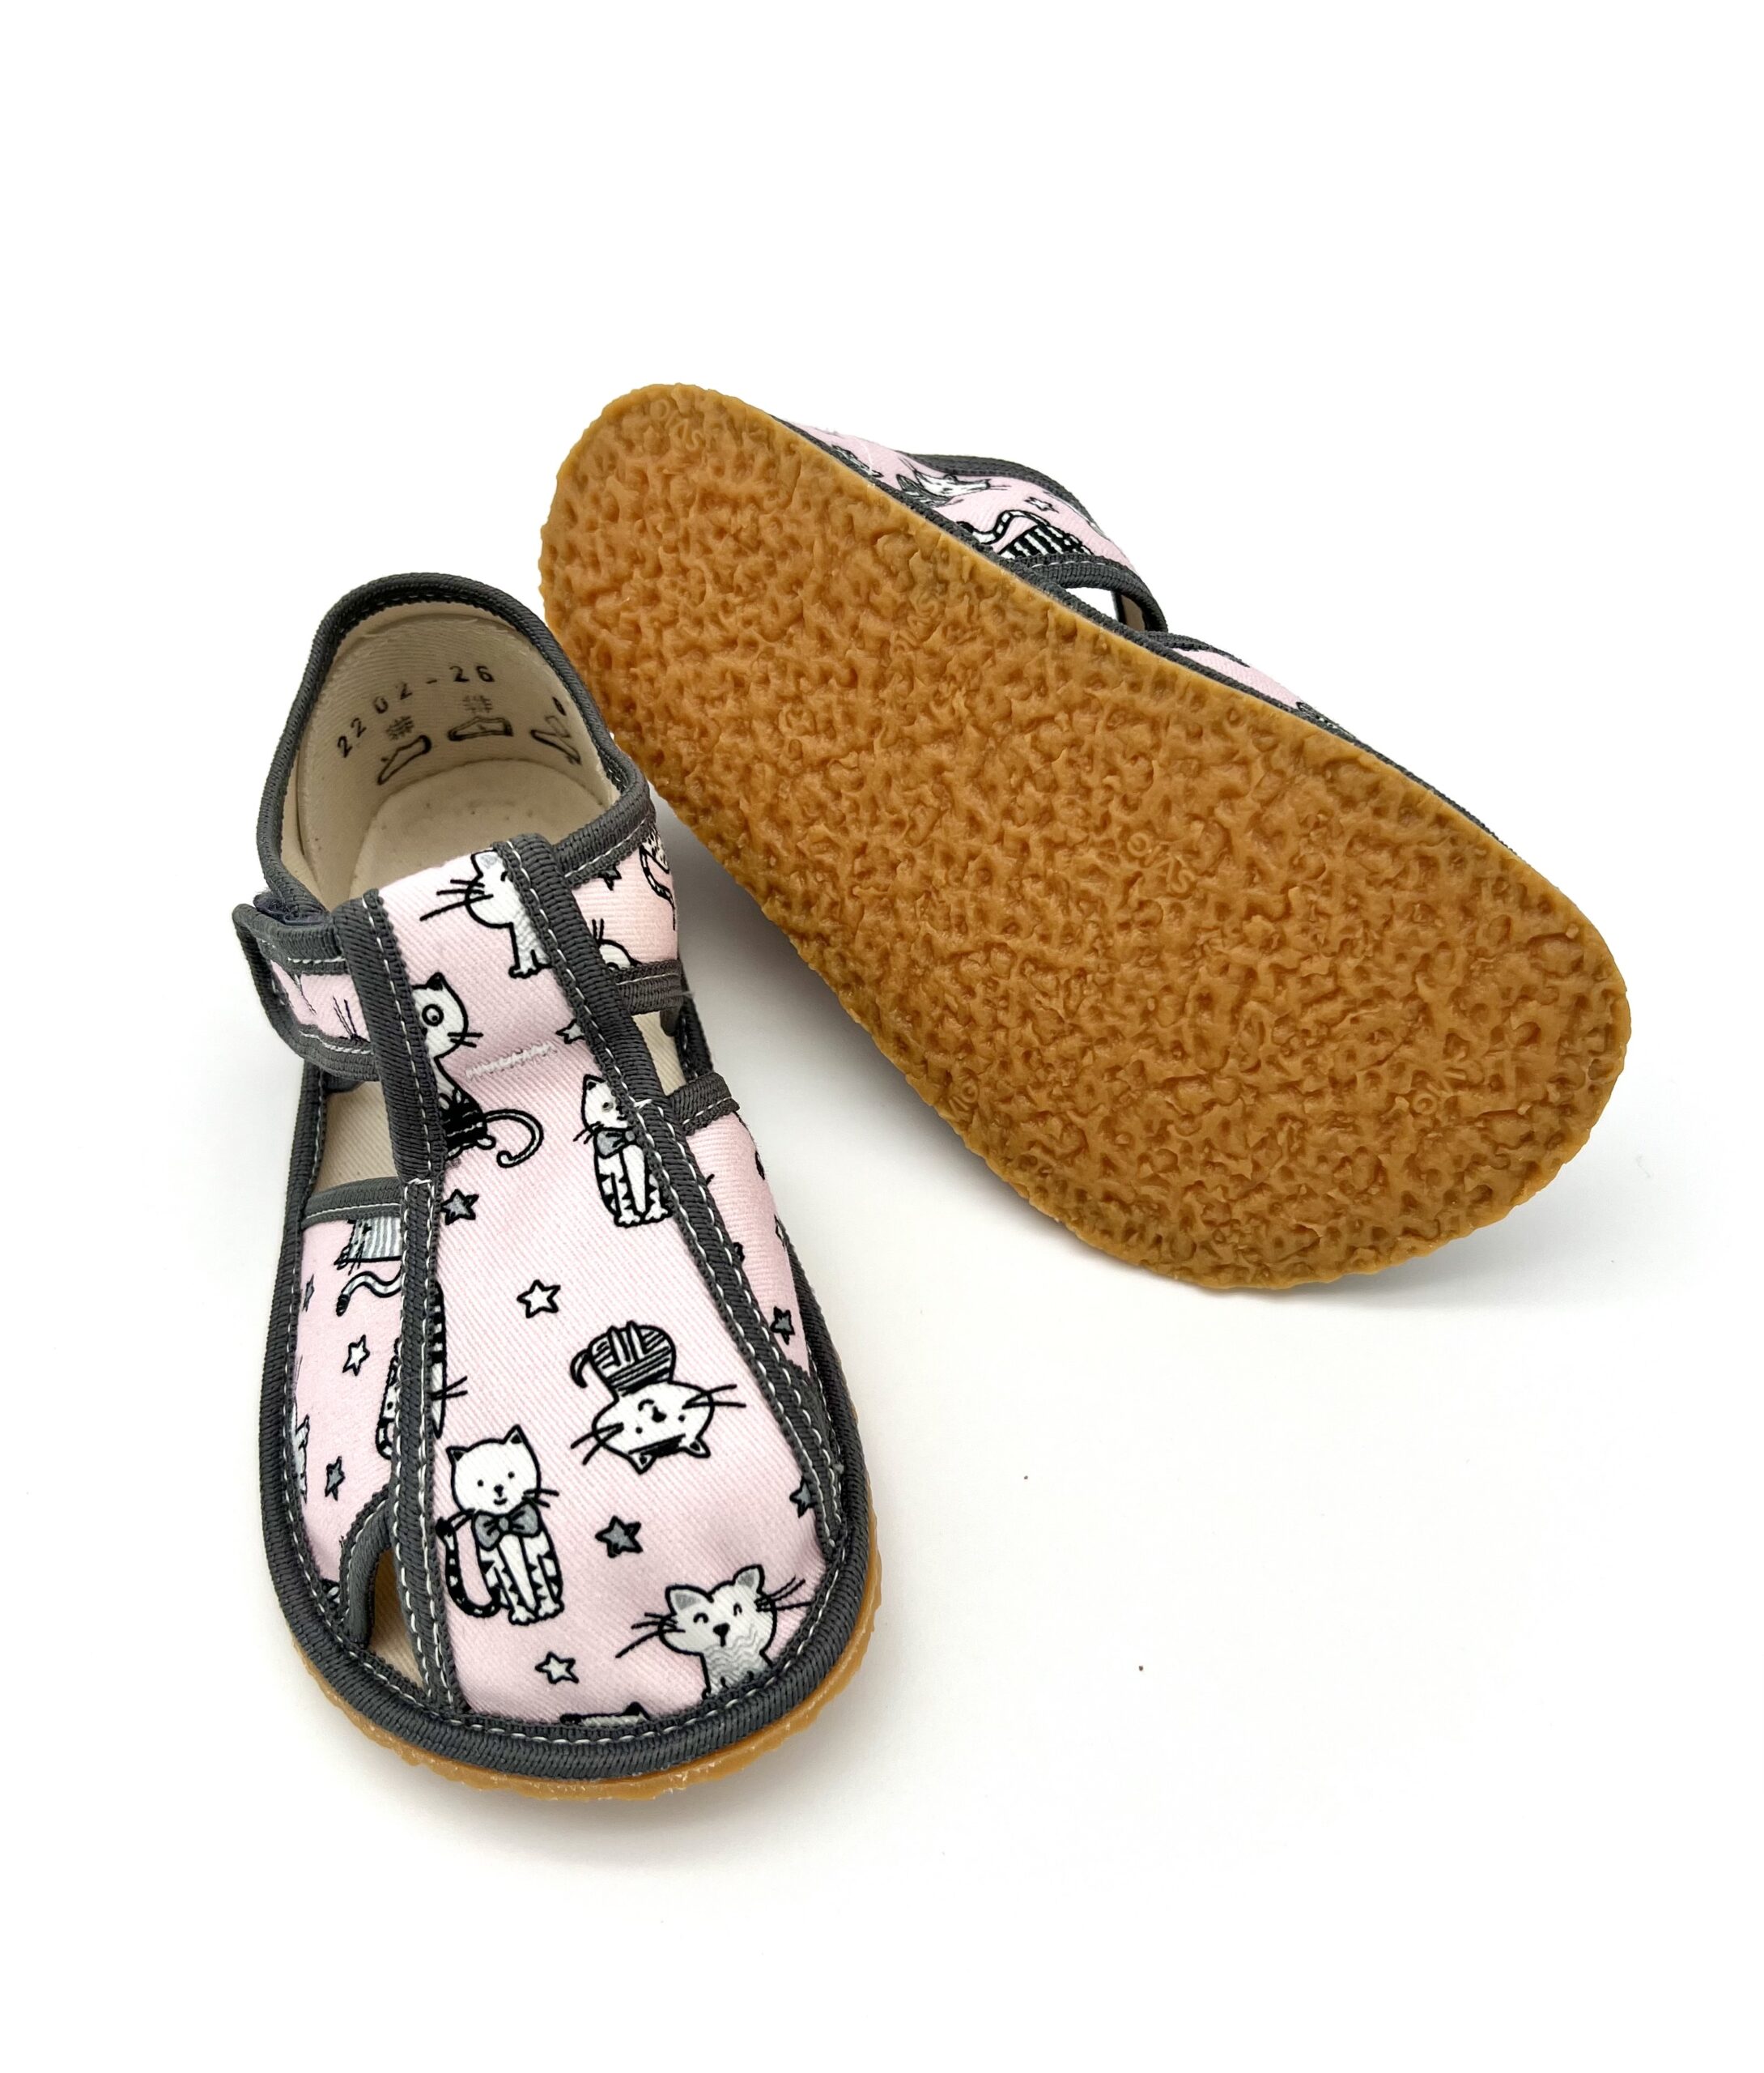 Baby Bare sisejalatsid Pug Laste barefoot jalatsid - HellyK - Kvaliteetsed lasteriided, villariided, barefoot jalatsid